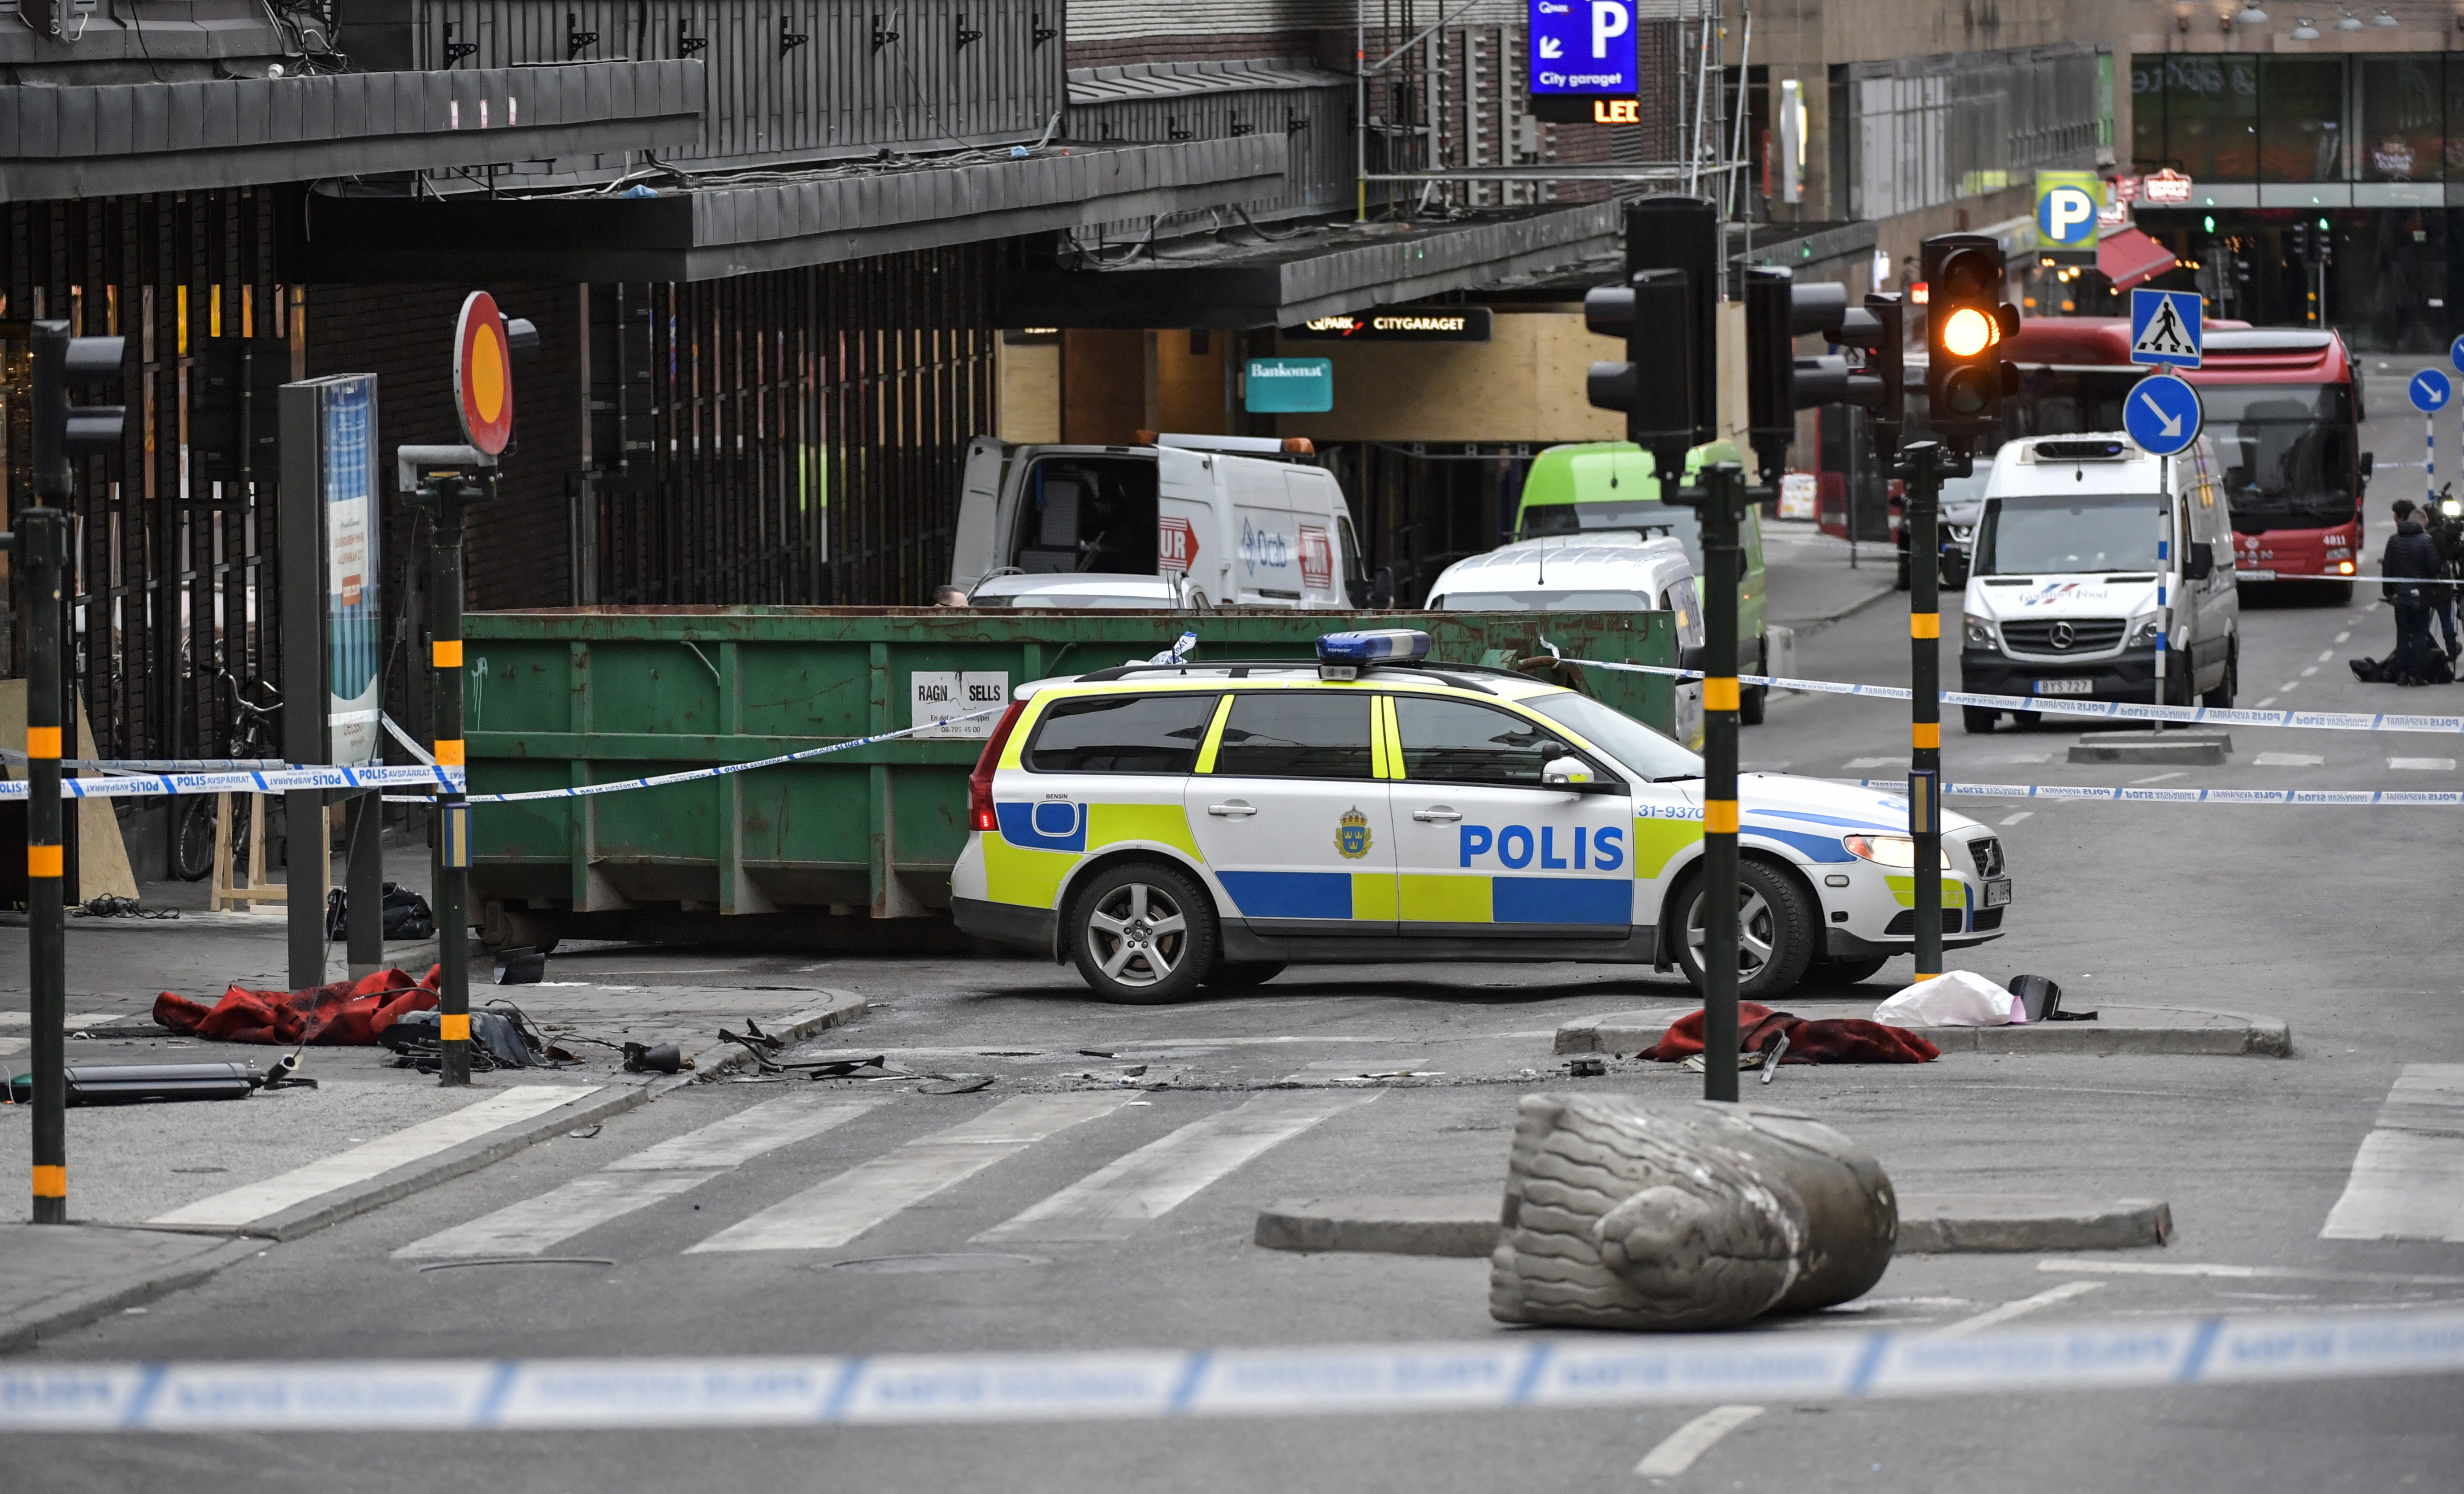 Las autoridades investigan un objeto encontrado dentro del camión usado para el ataque, que podría ser un explosivo.